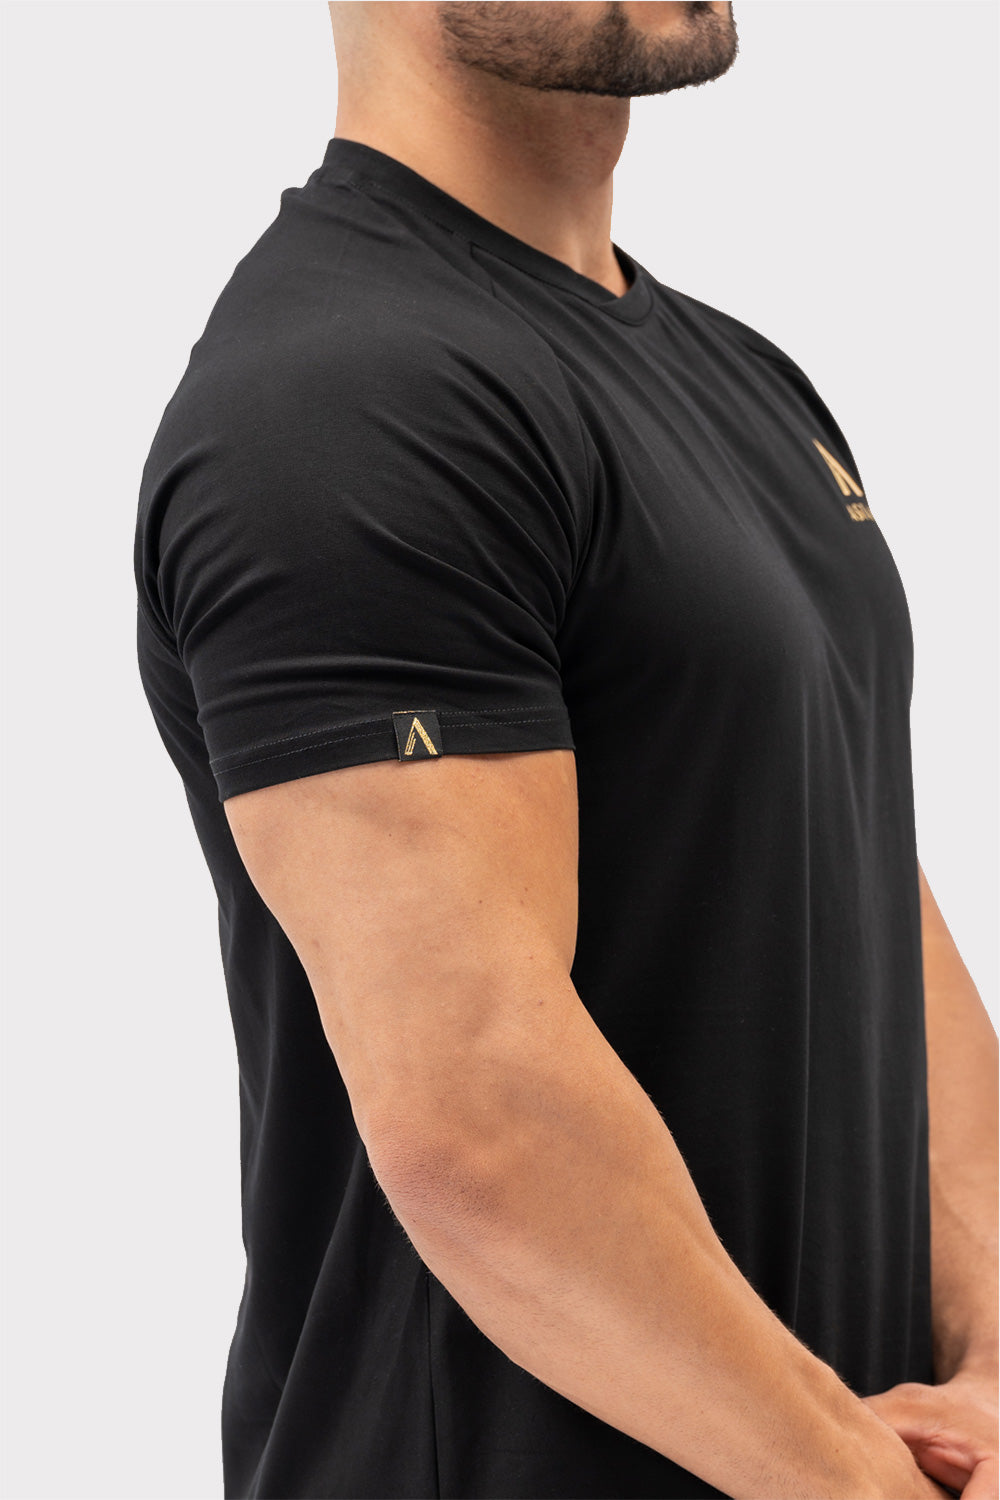 A CODE T-Shirt - Zwart